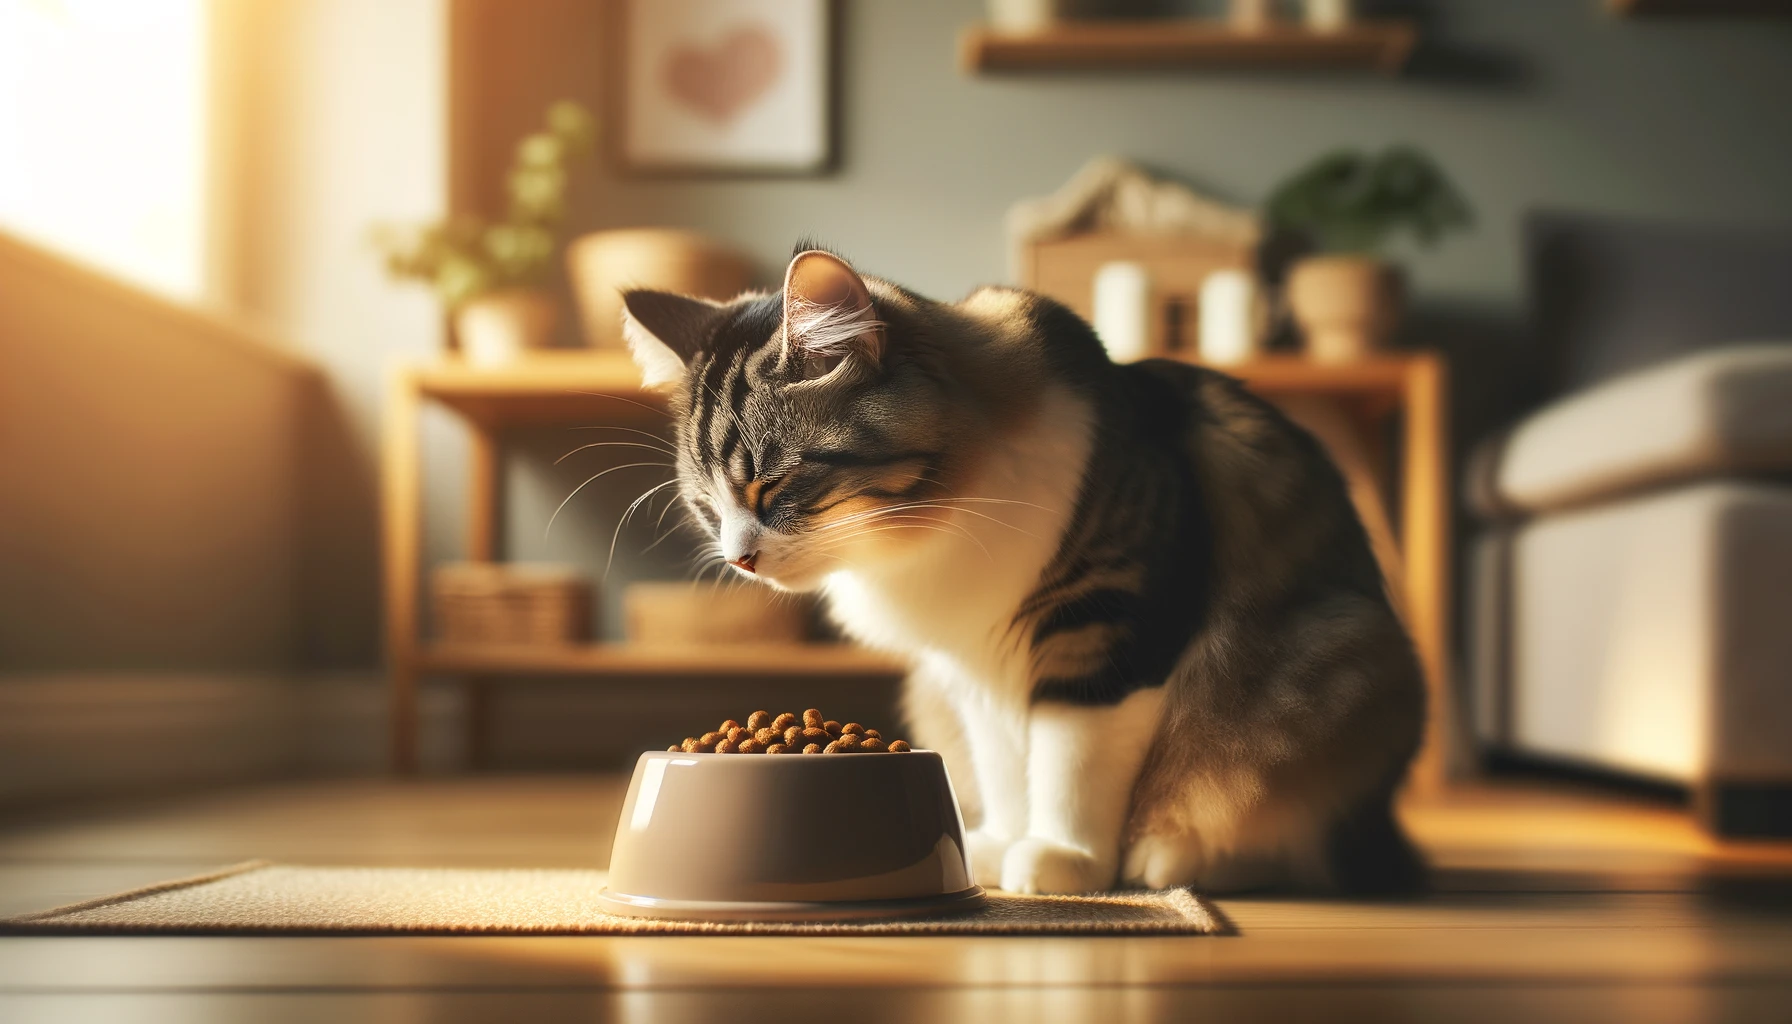 แมวควรกินอาหารกี่มื้อต่อวัน? ตารางให้อาหารแมวที่ถูกต้อง